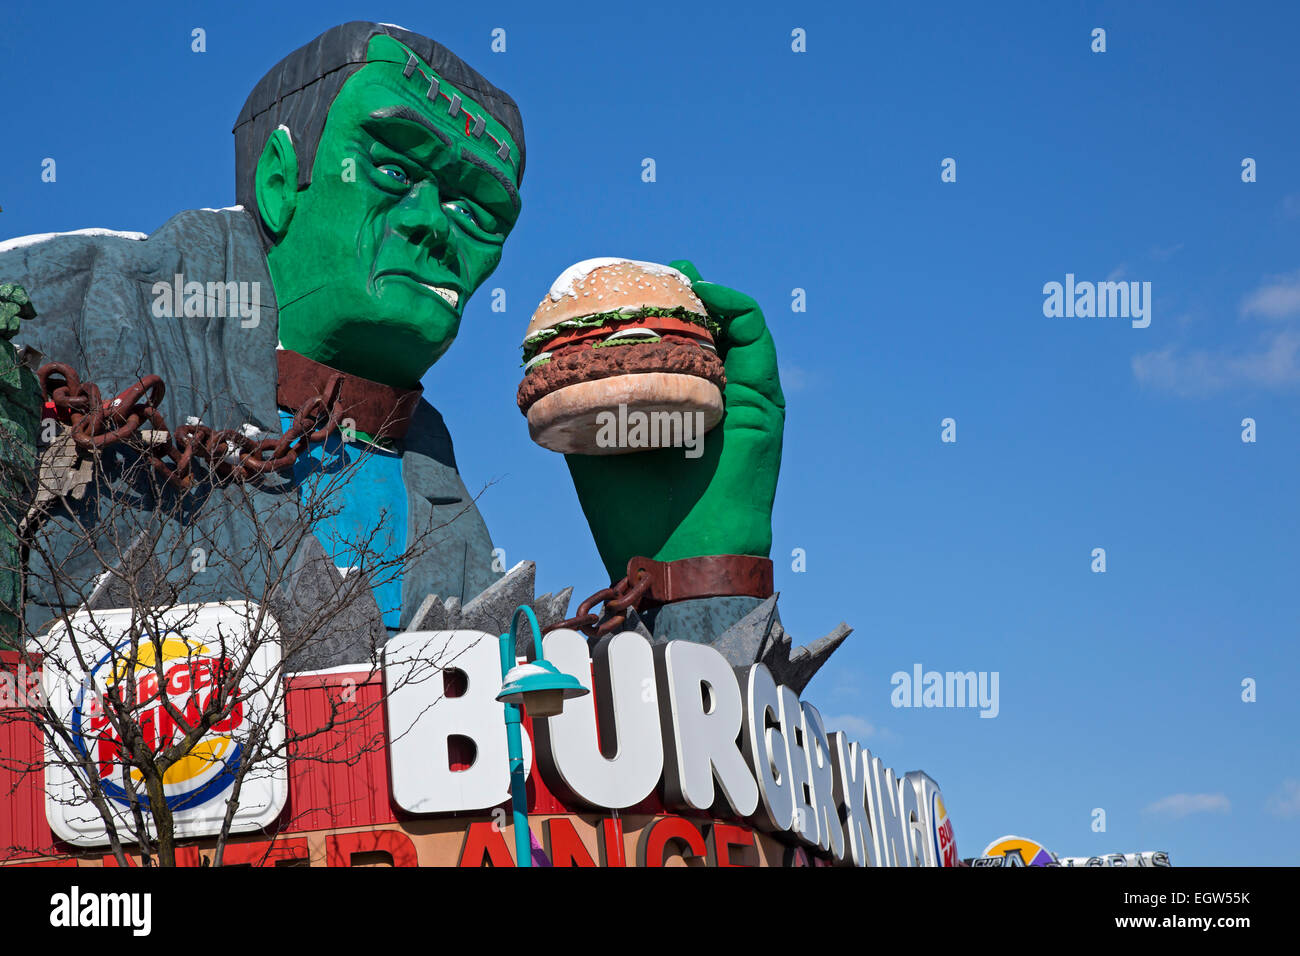 Niagara Falls, Ontario - Frankenstein isst einen Hamburger auf einer Burger King Filiale in Niagara Falls Clifton Hill Touristenviertel. Stockfoto